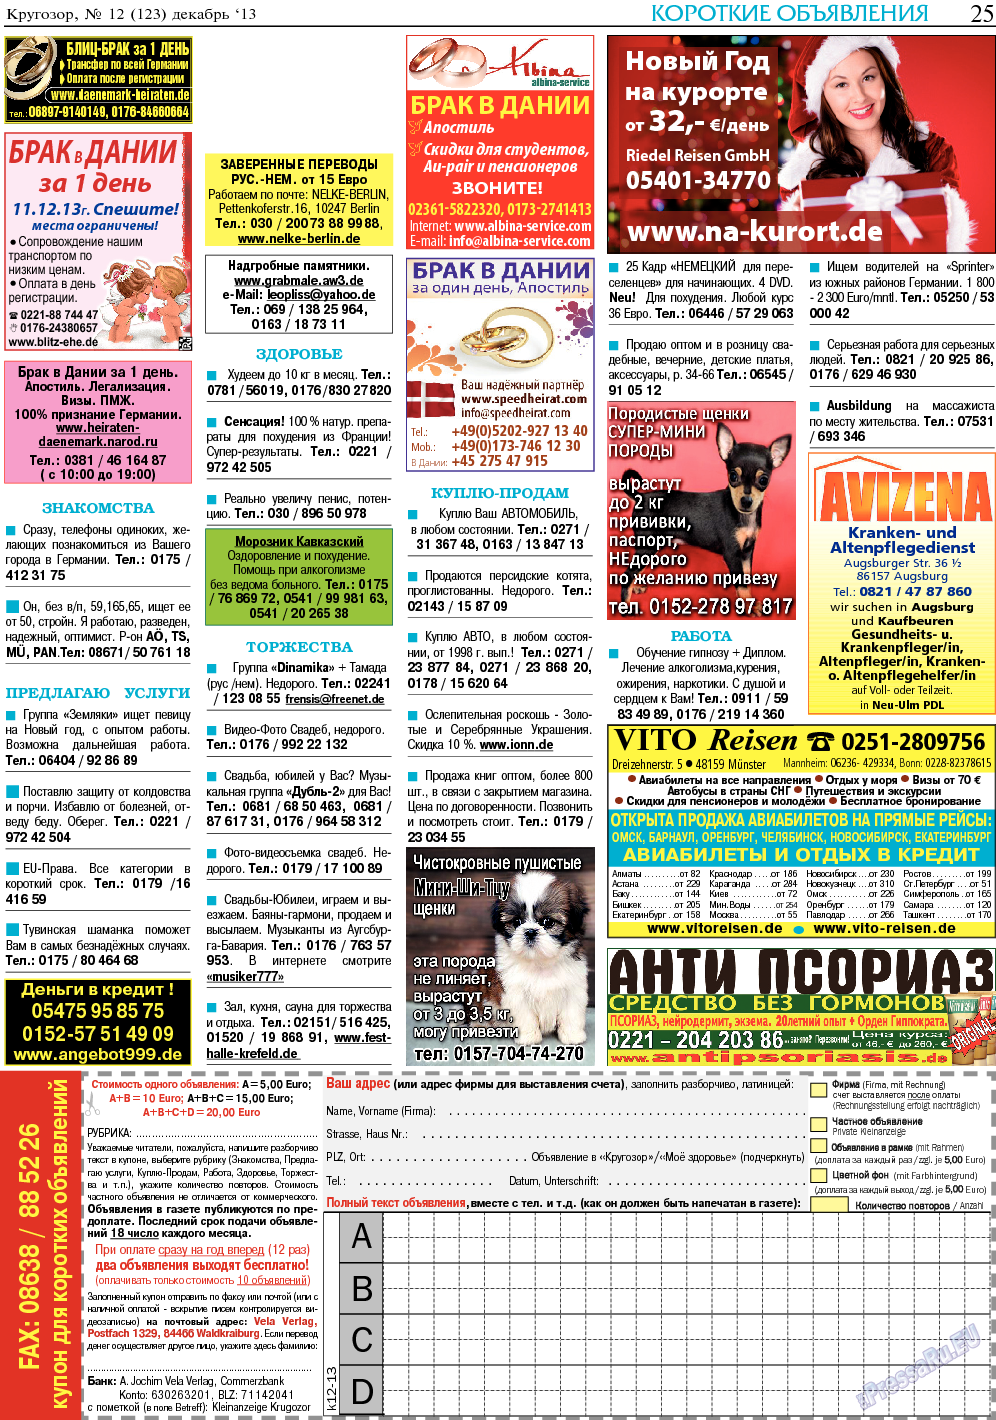 Кругозор (газета). 2013 год, номер 12, стр. 25